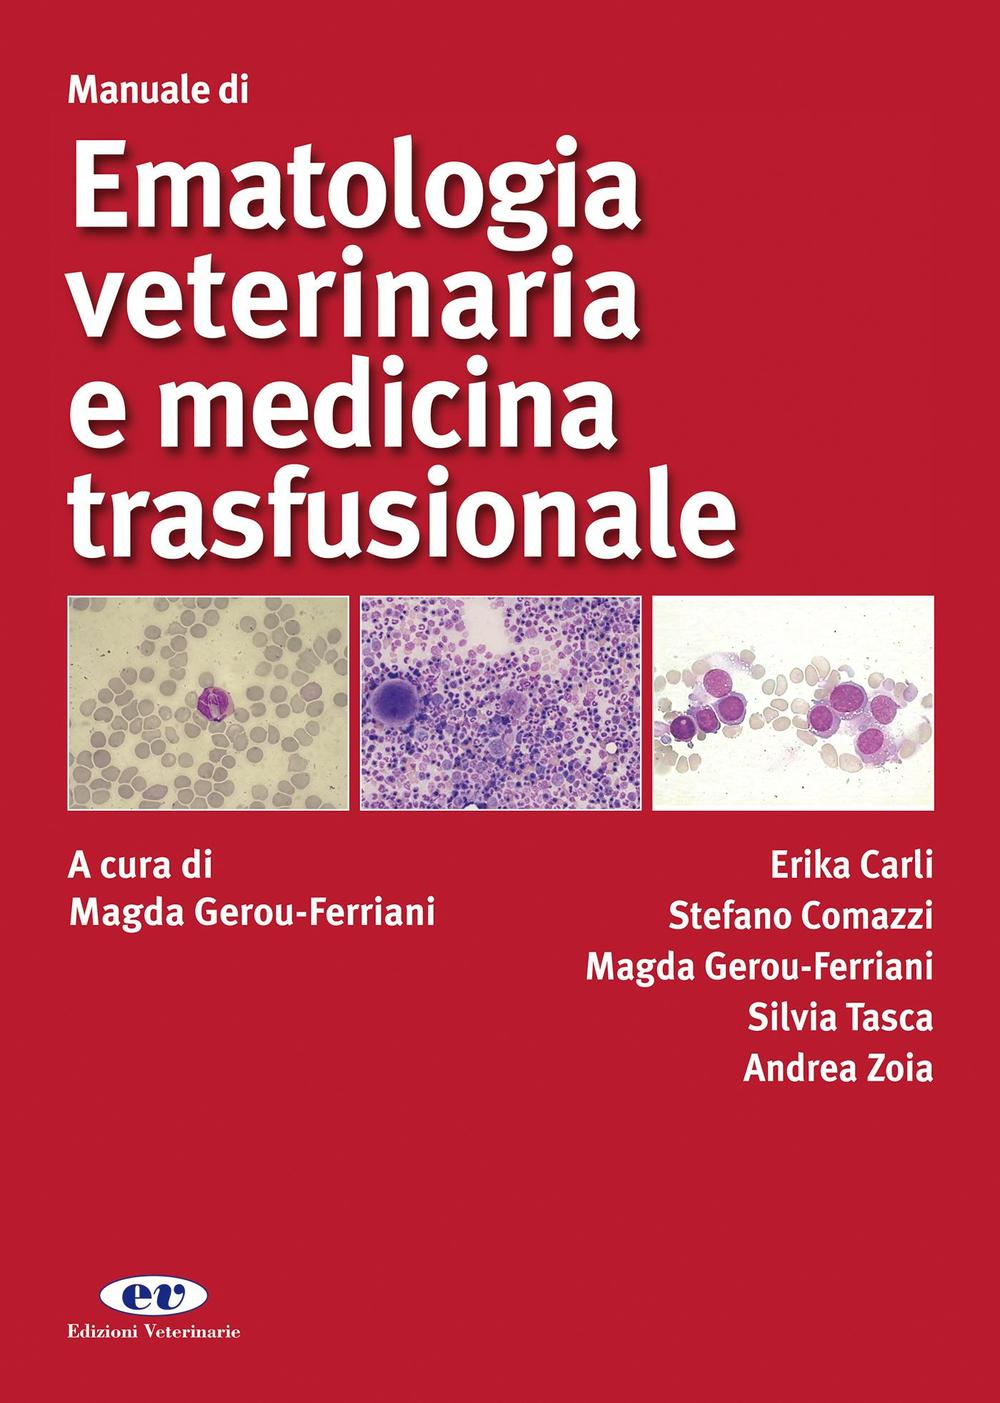 Image of Manuale di ematologia veterinaria e medicina trasfusionale